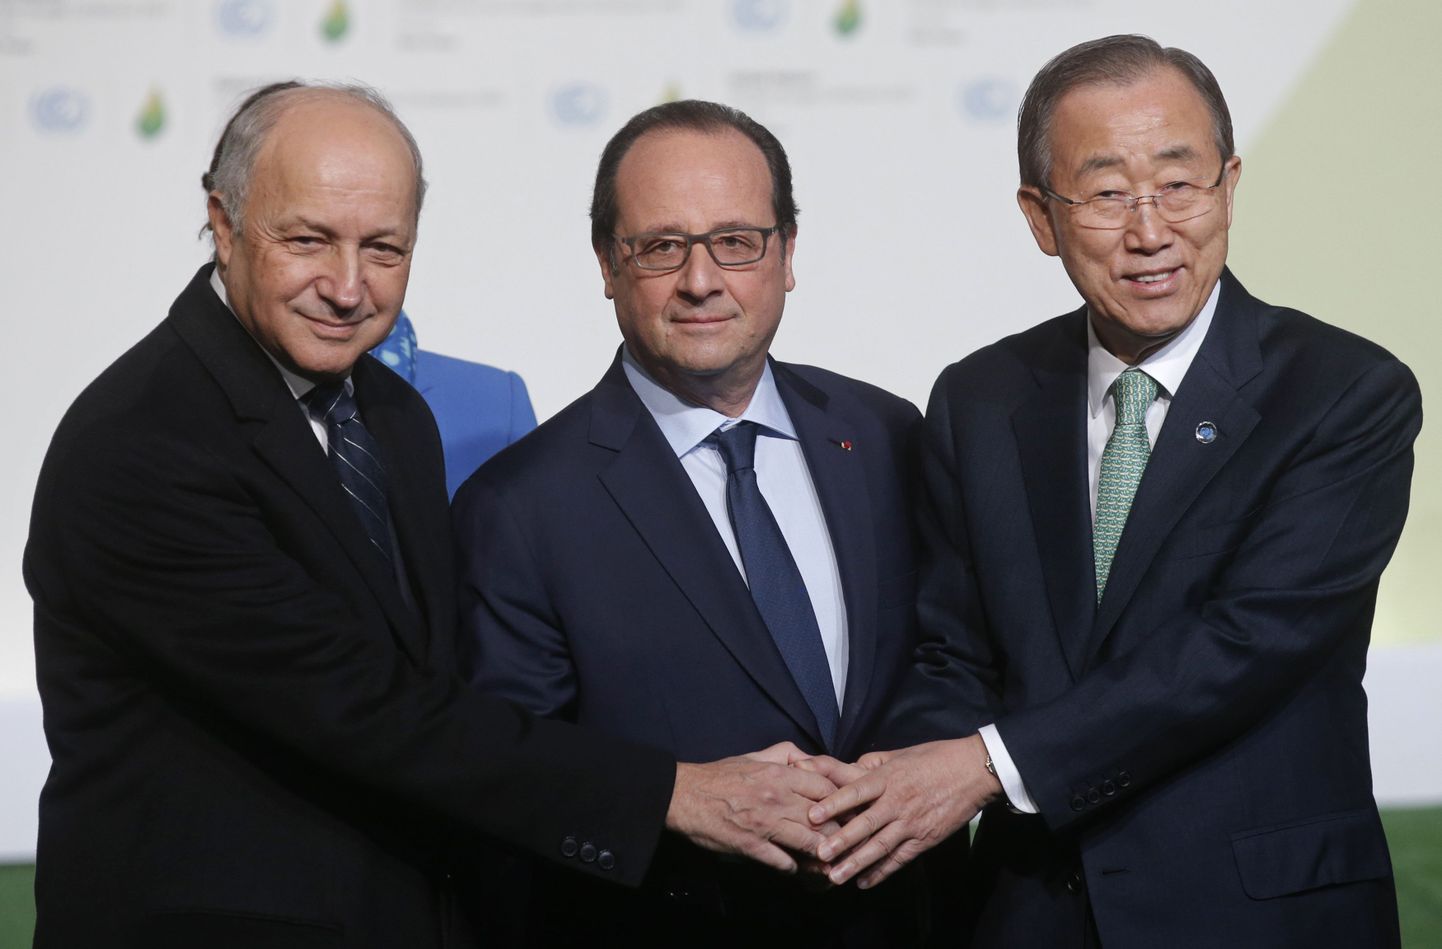 Prantsuse president François Hollande  (keskel), Prantsuse välisminister Laurent Fabius (vasakul) ja ÜRO peasekretär Ban Ki-moon kliimakonverentsi avamisel.